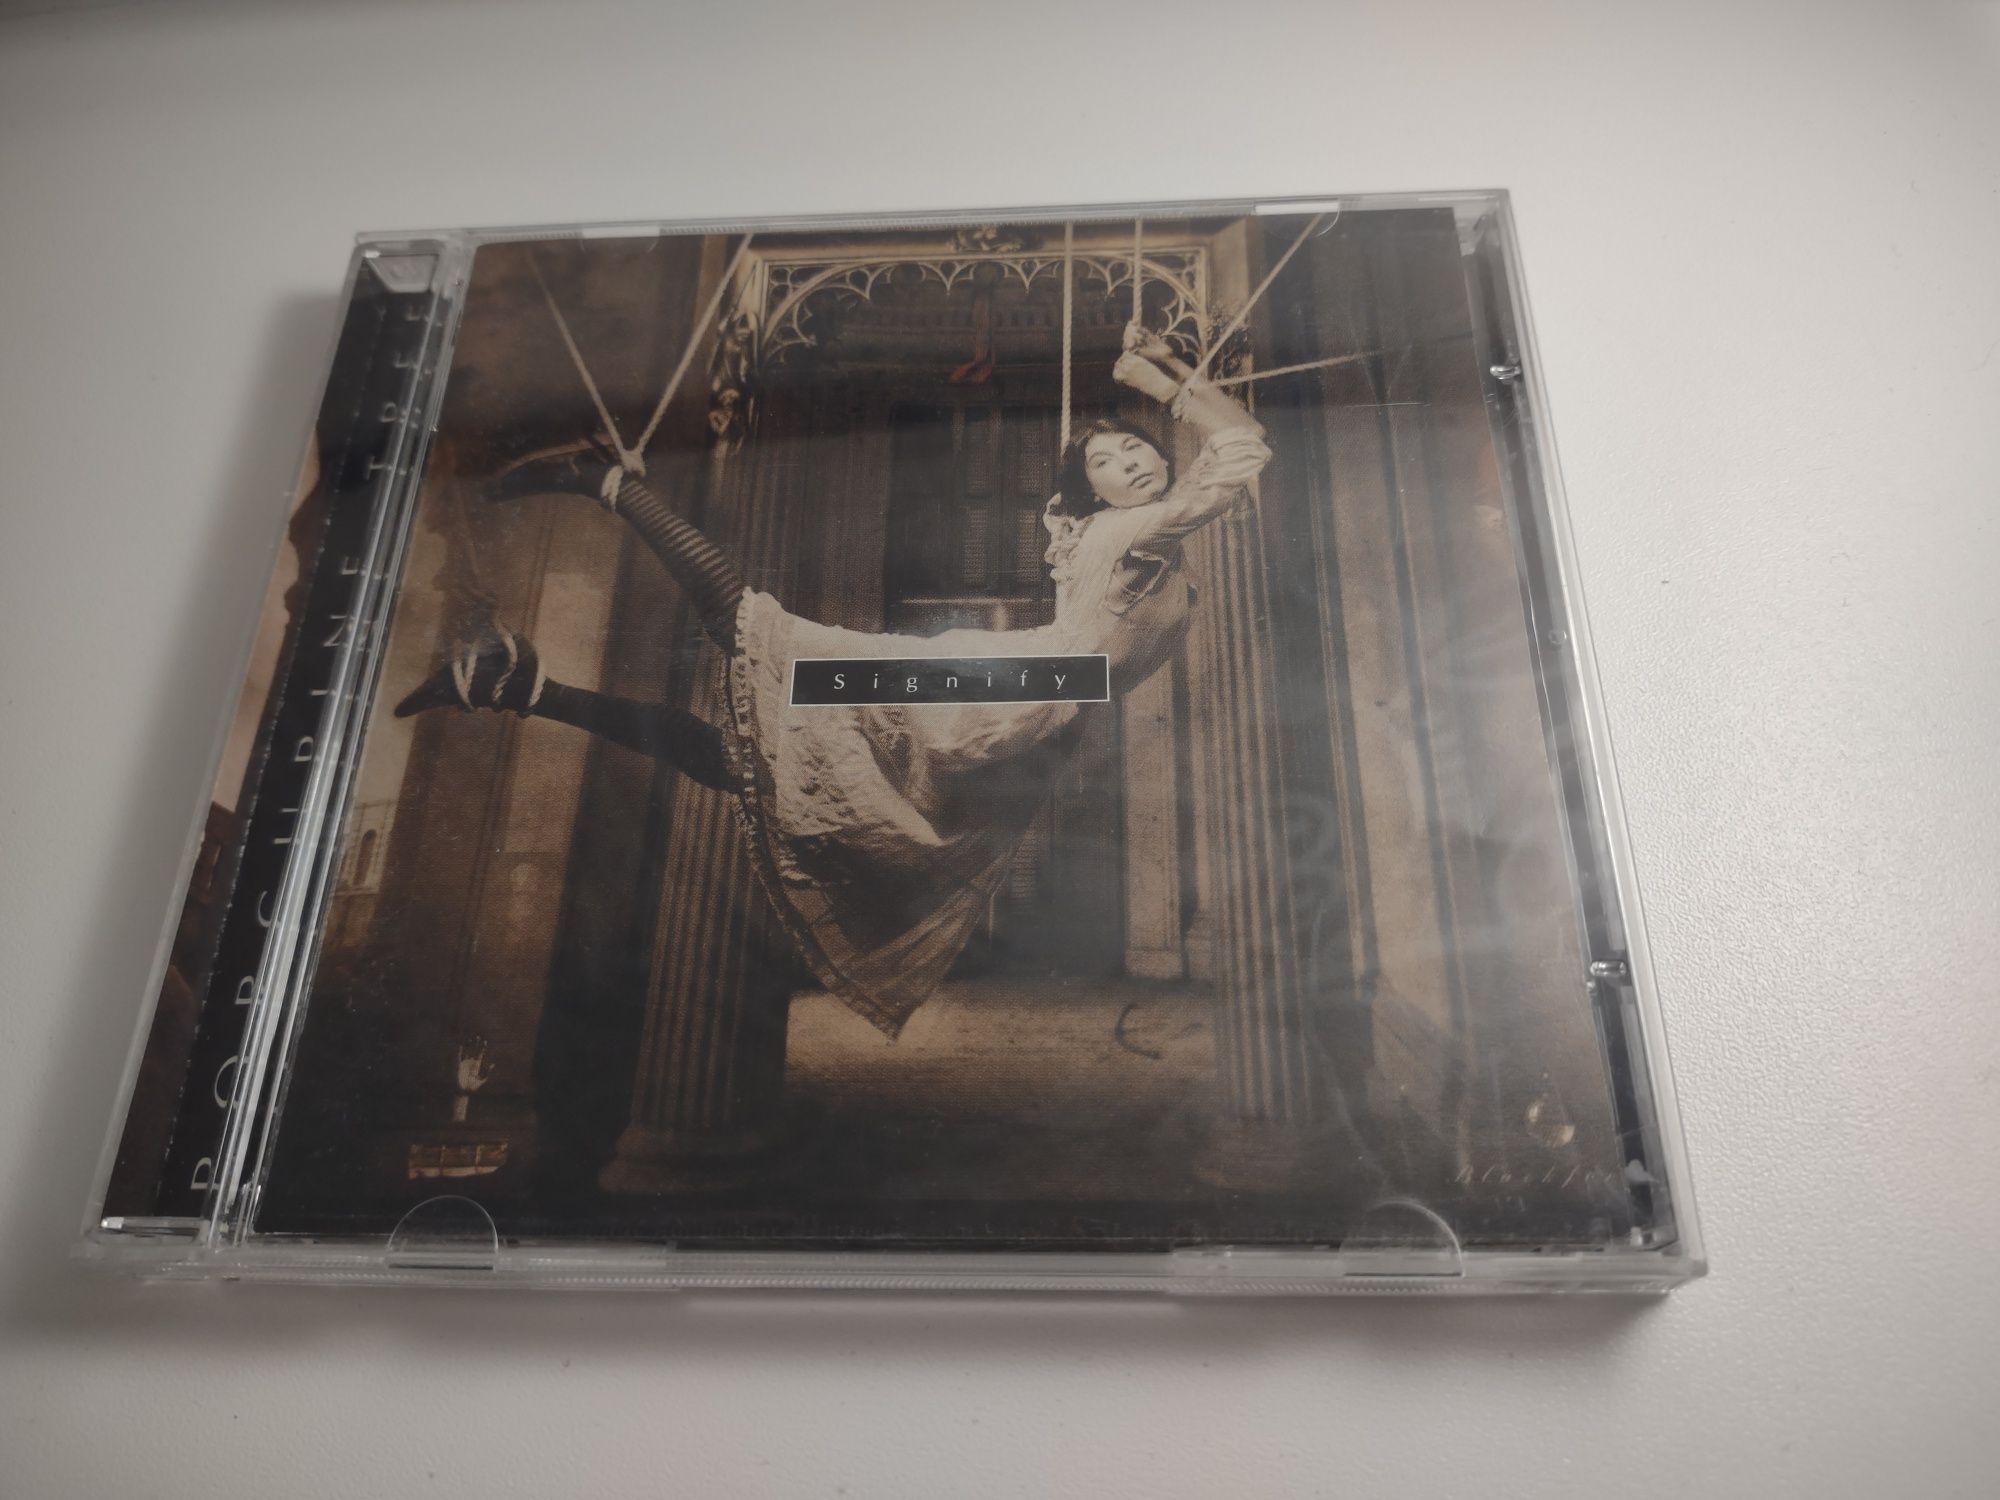 Porcupine Tree Signify pierwsze wydanie 1996 Delerium Records cd